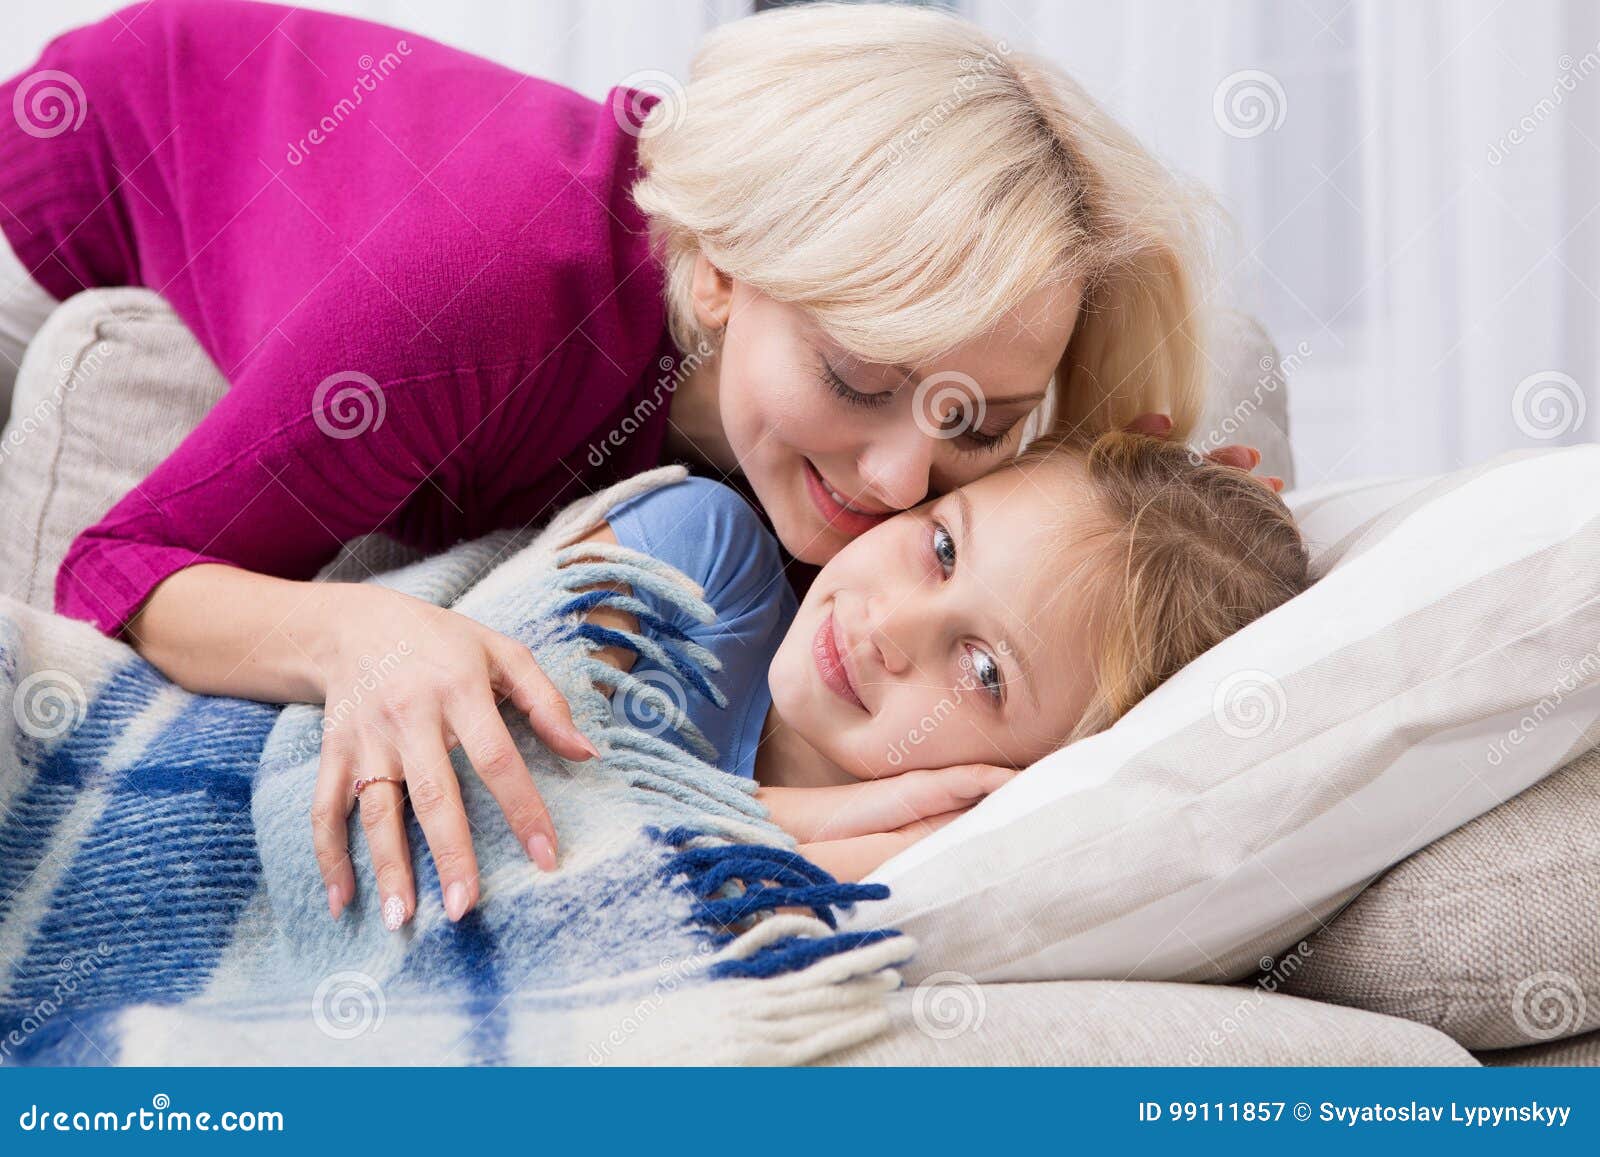 Брат мама одеяло. Кевин обнимает маму. Мать обнимает больную дочку. Мама обнимает больного ребенка. Мать обнимает болеющего ребёнка.